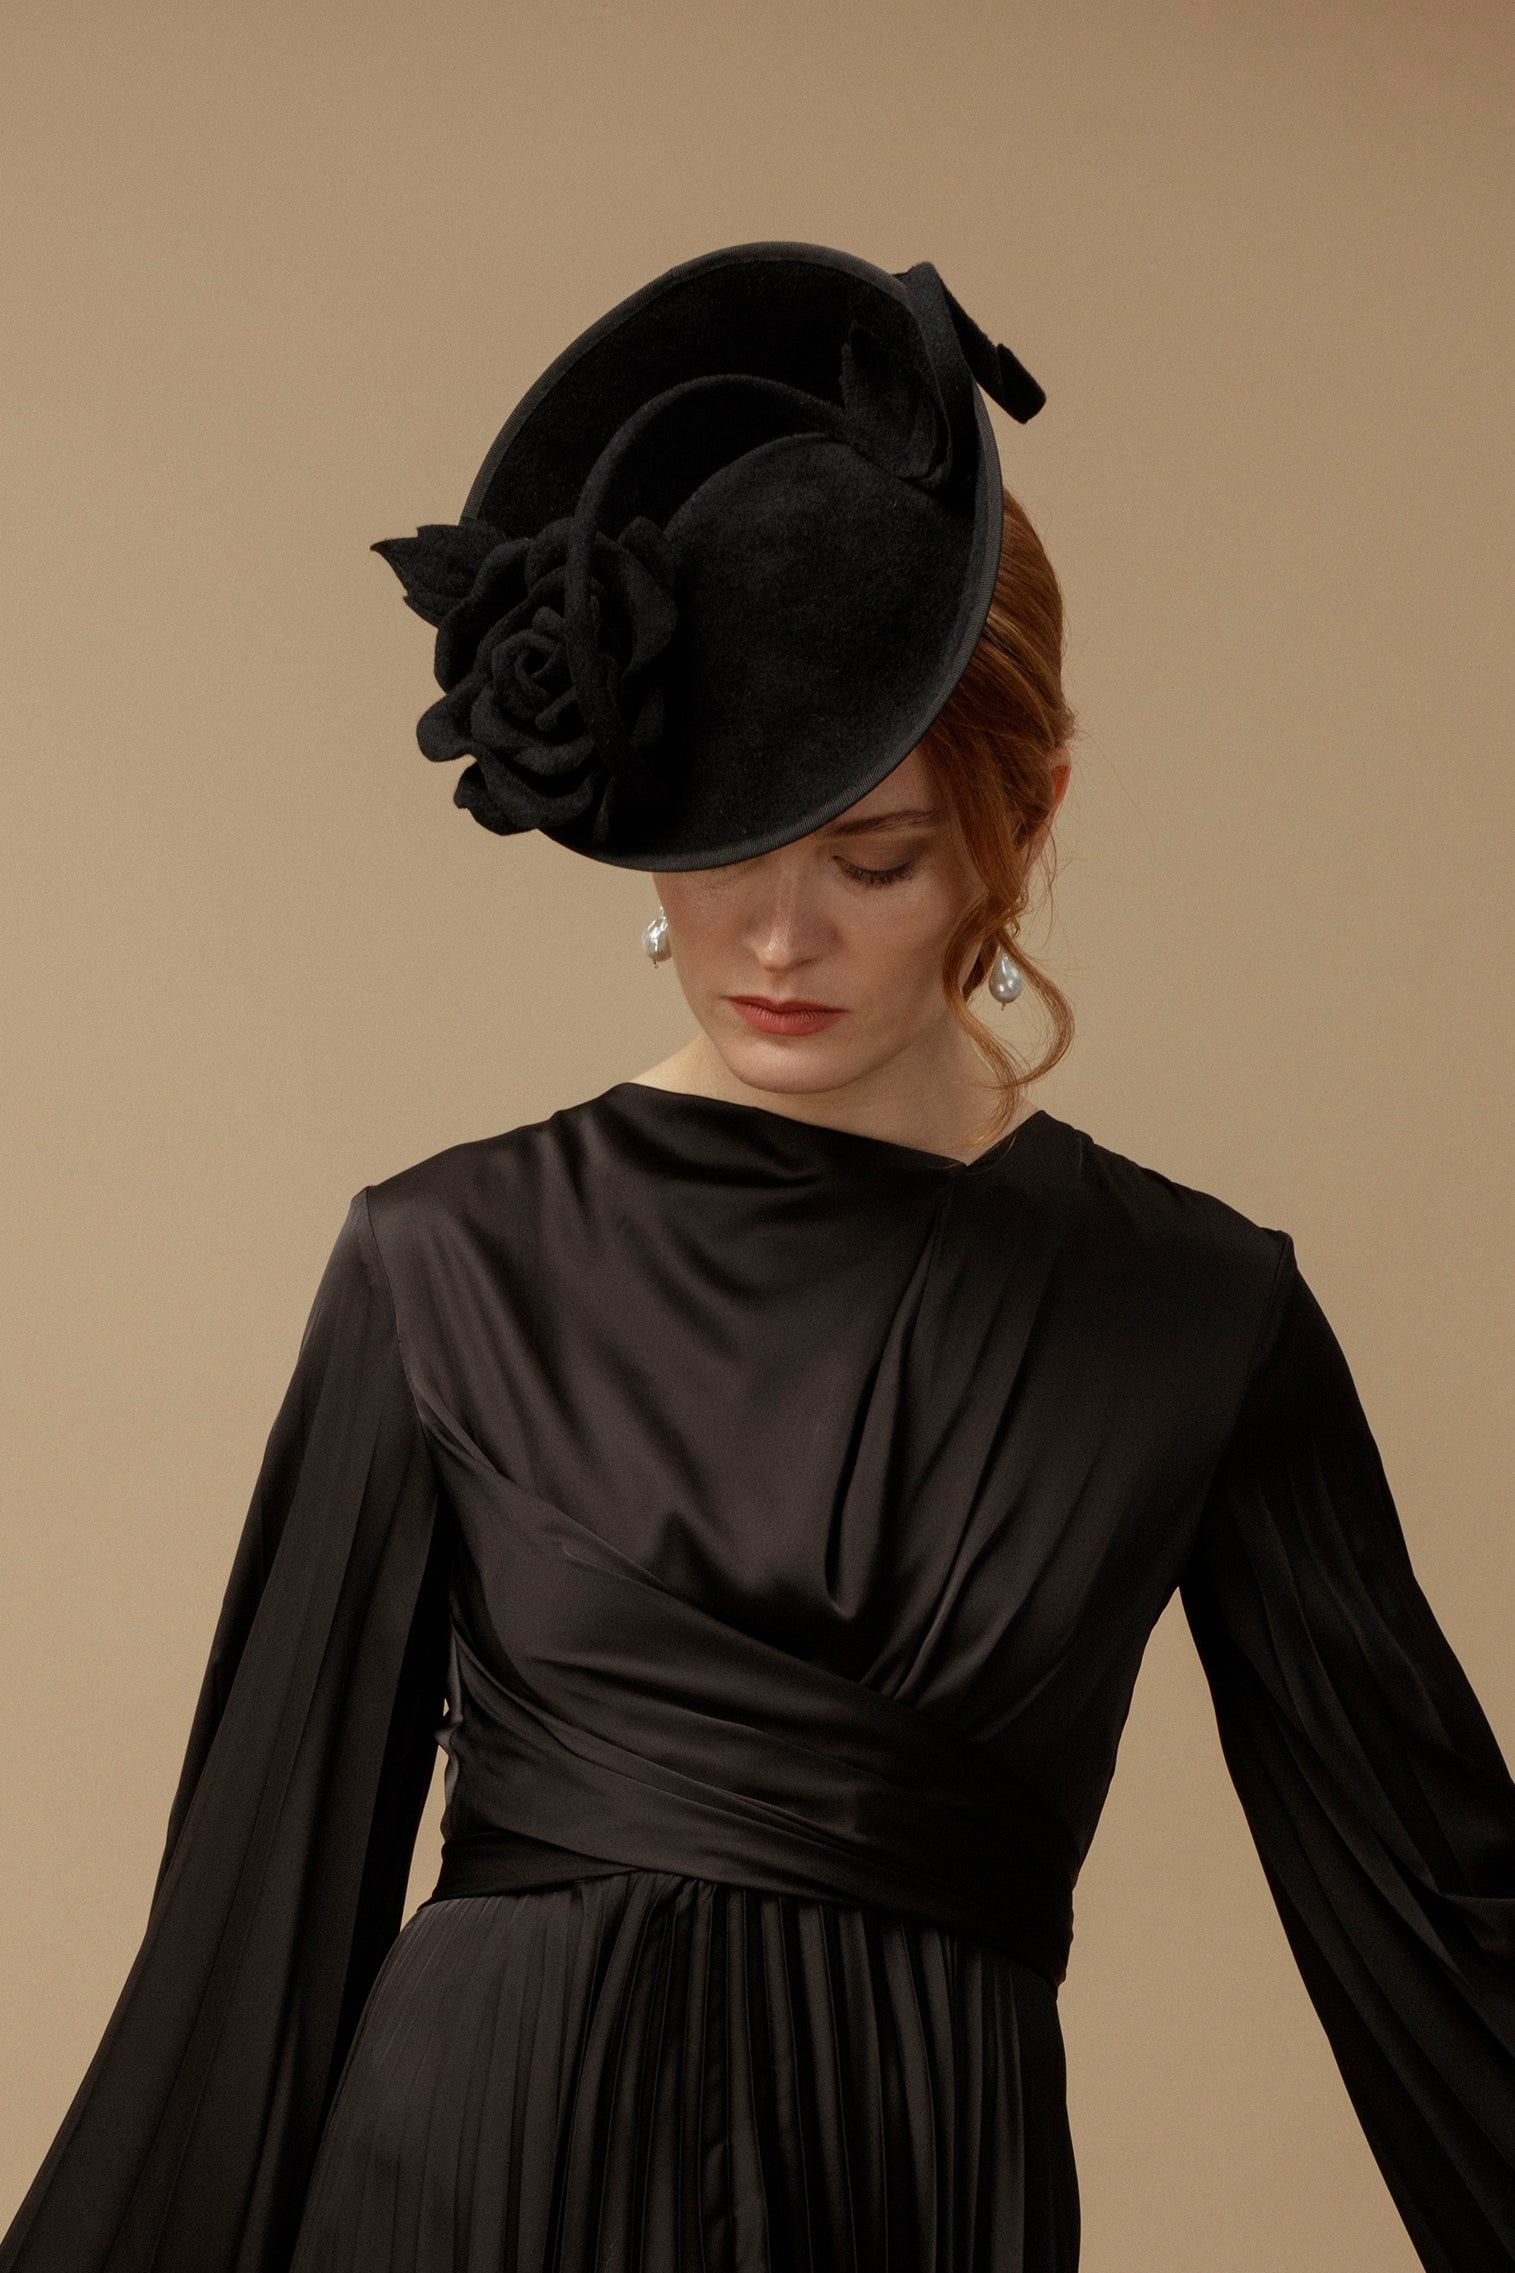 Black Belgravia Rose Hat - Black Hats for Women - Lock & Co. Hatters London UK